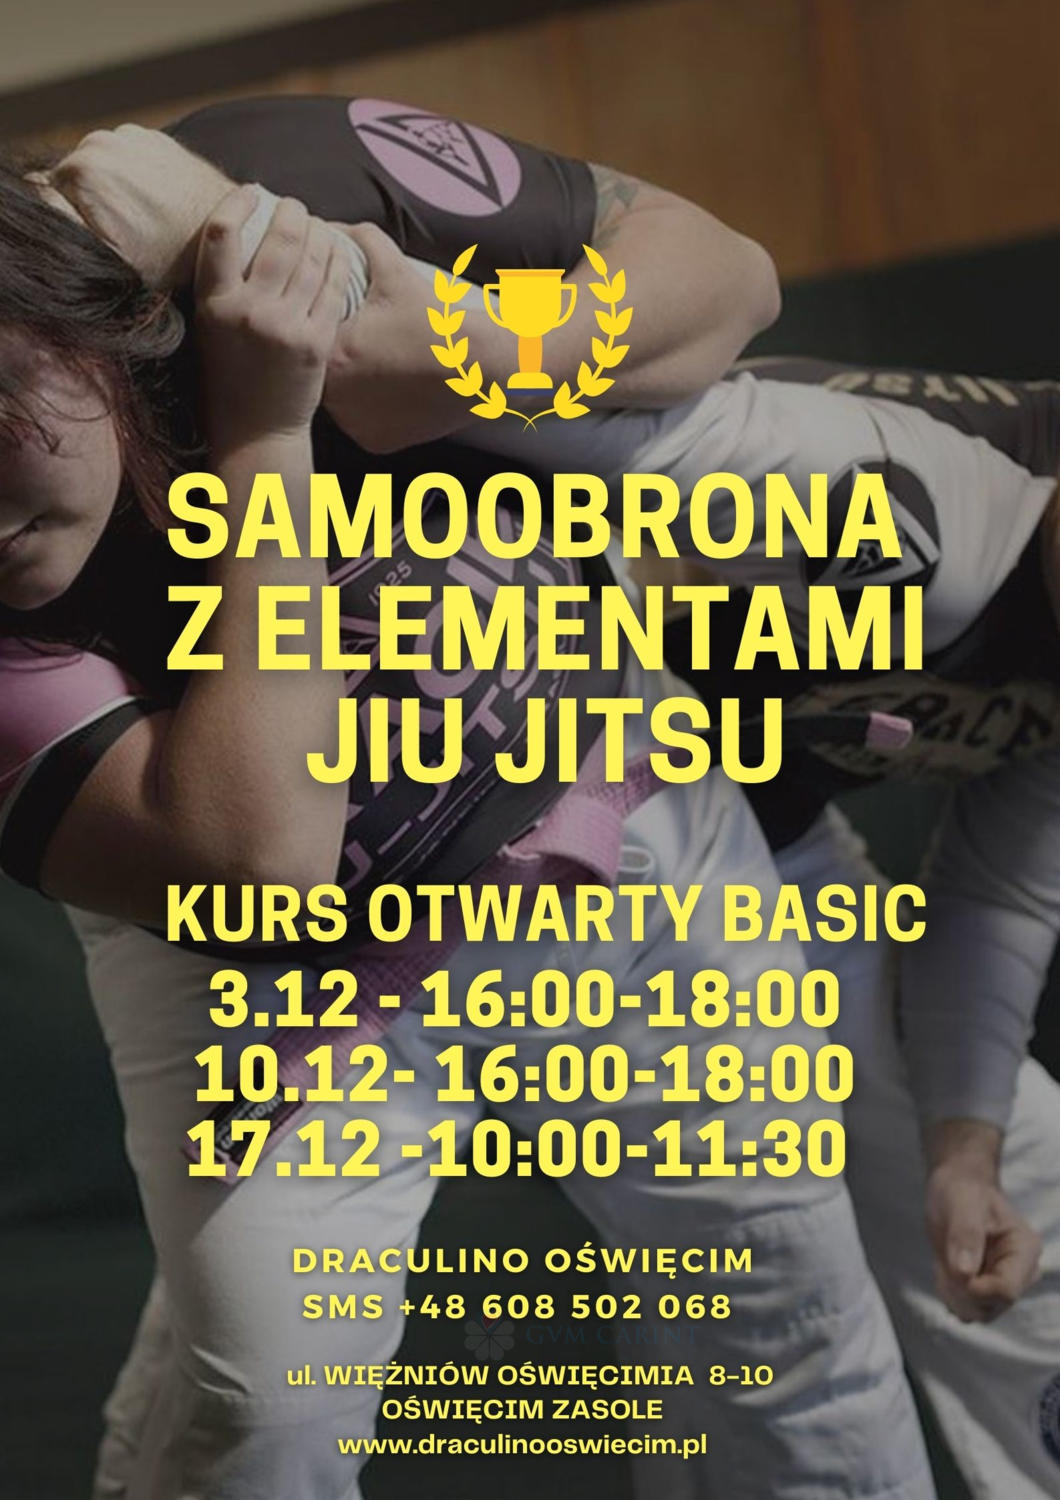 Oświęcimski Klub Sportowy Draculino organizuje otwarty kurs podstaw samoobrony z elementami Jiu-Jitsu dla mieszkańców Oświęcimia i okolic.